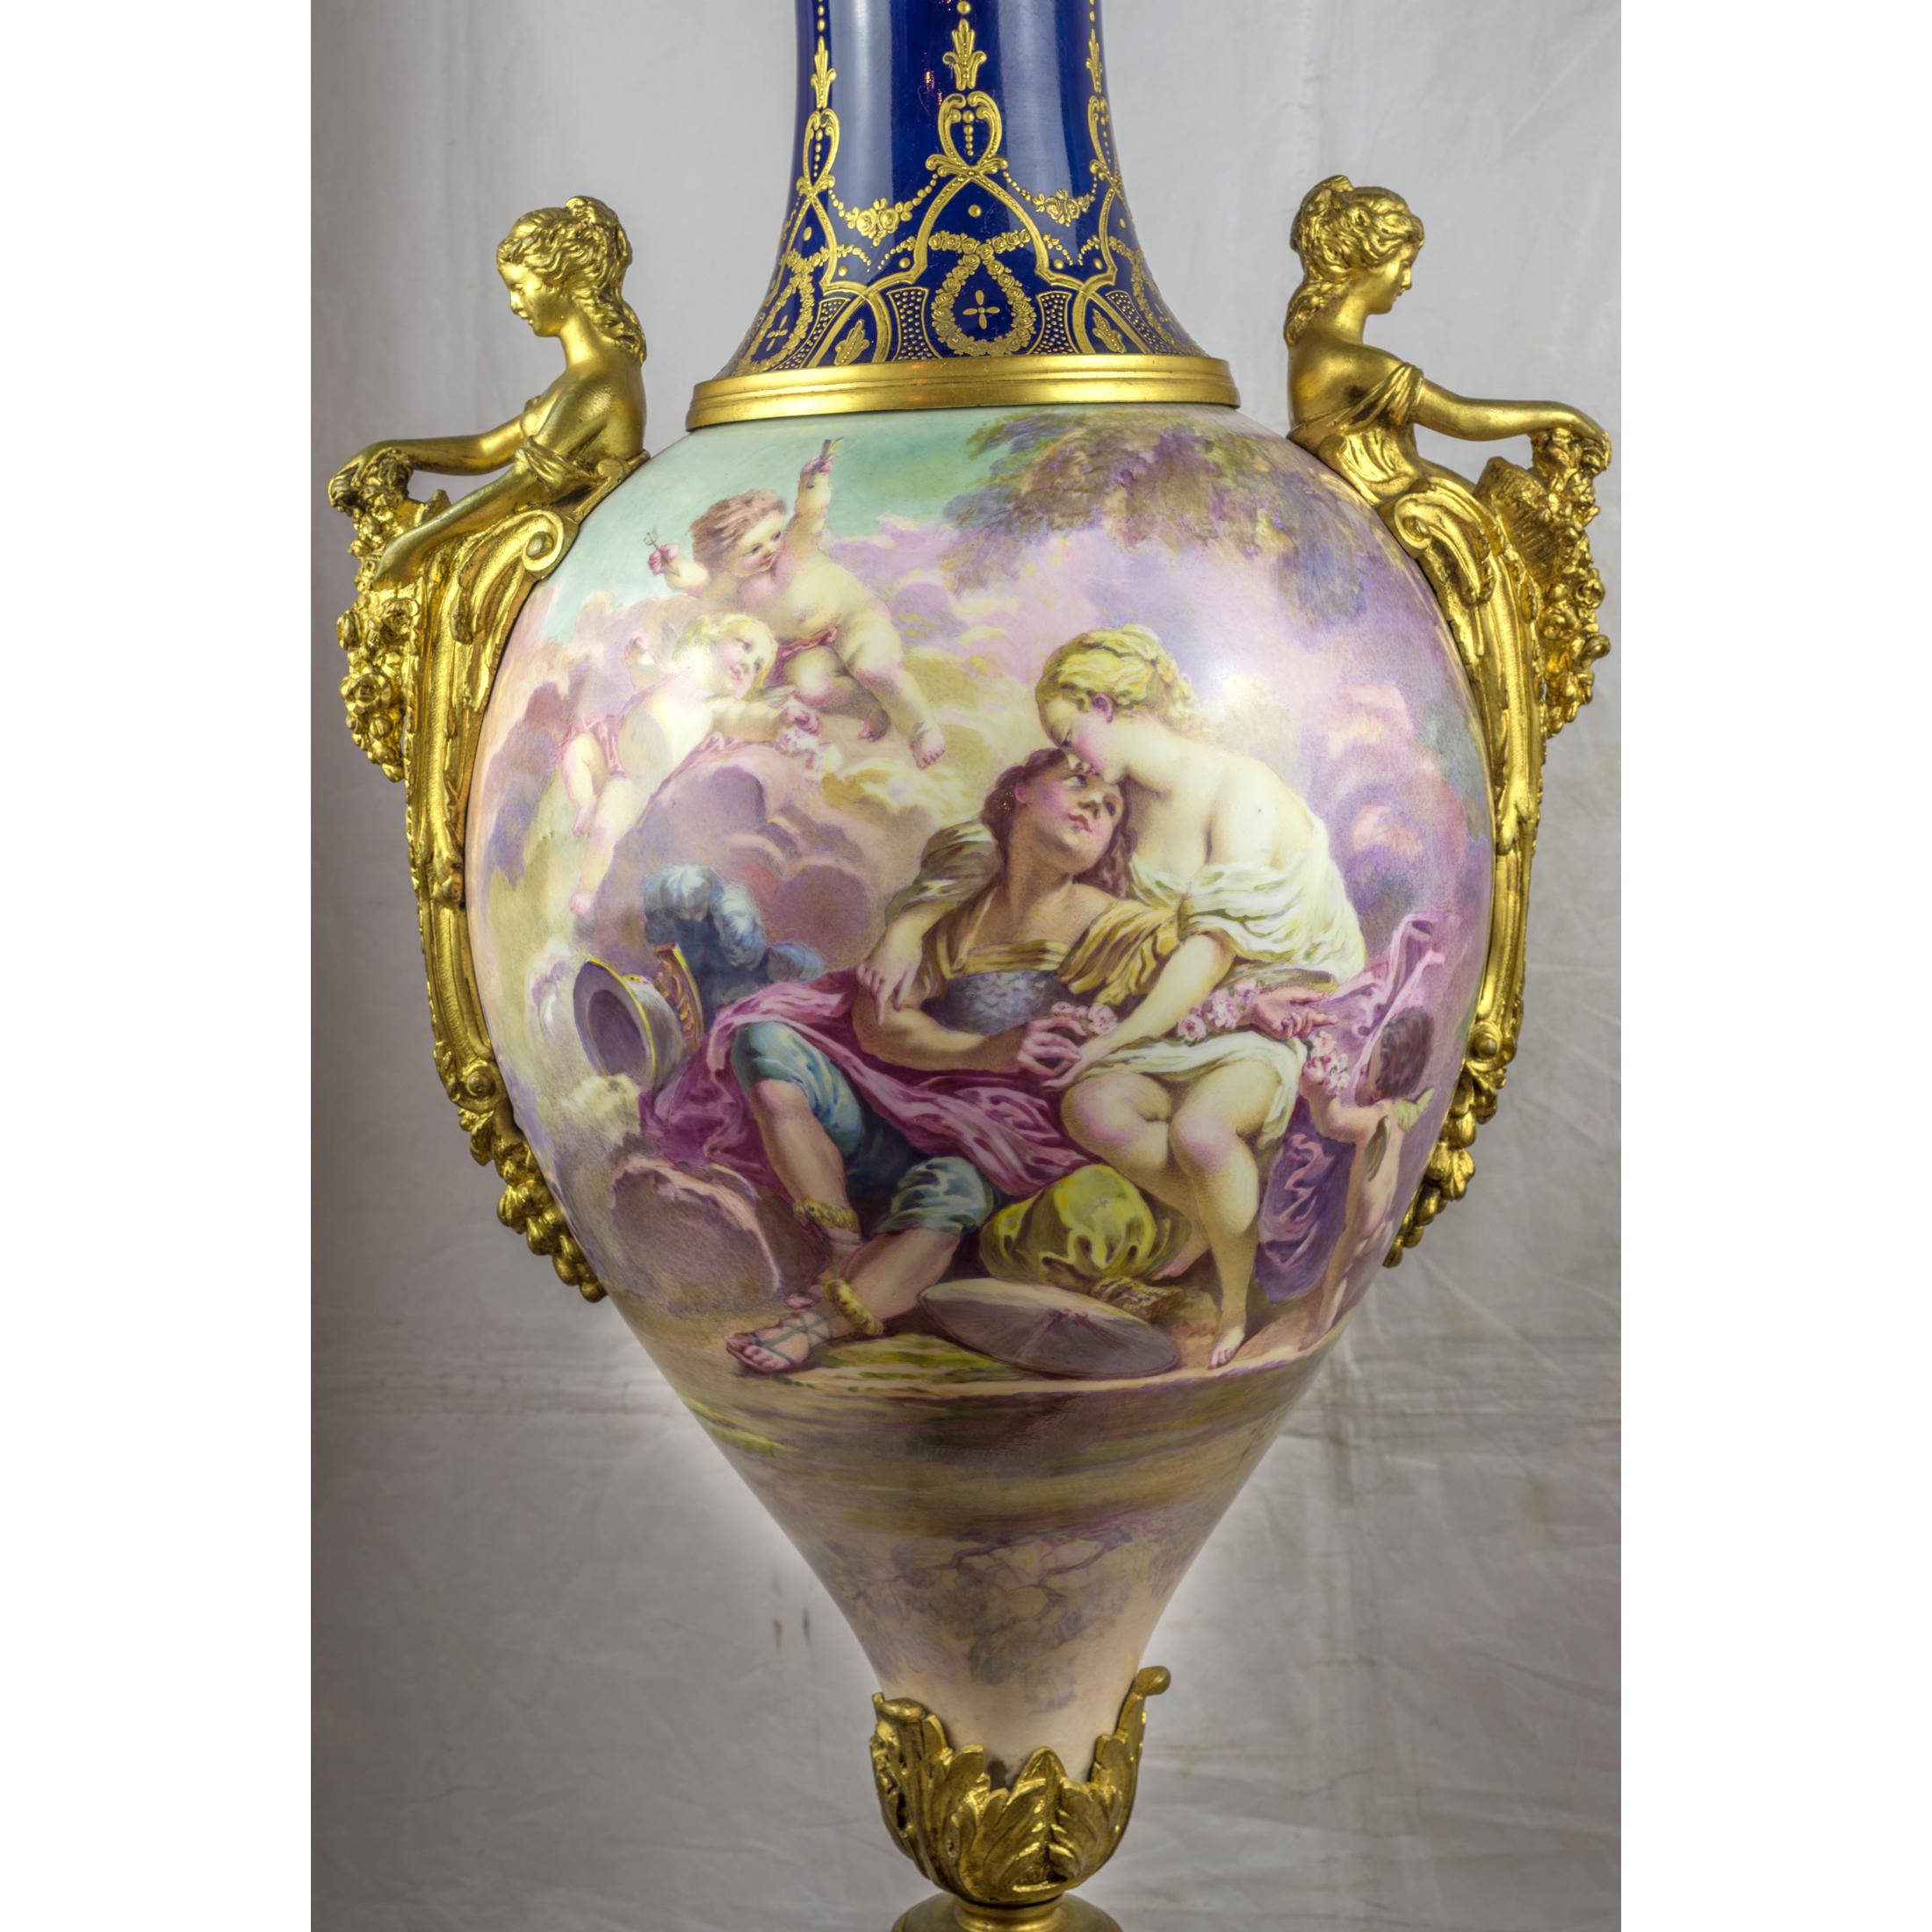 Eine feine Qualität Sèvres-Stil Porzellan und vergoldeter Bronze montiert Vase und Deckel.
Handgemalte durchgehende allegorische Figurenszene, signiert Maxant

Herkunft: Französisch
Datum: um 1860
Abmessungen: 45 in x 15 1/2 in.